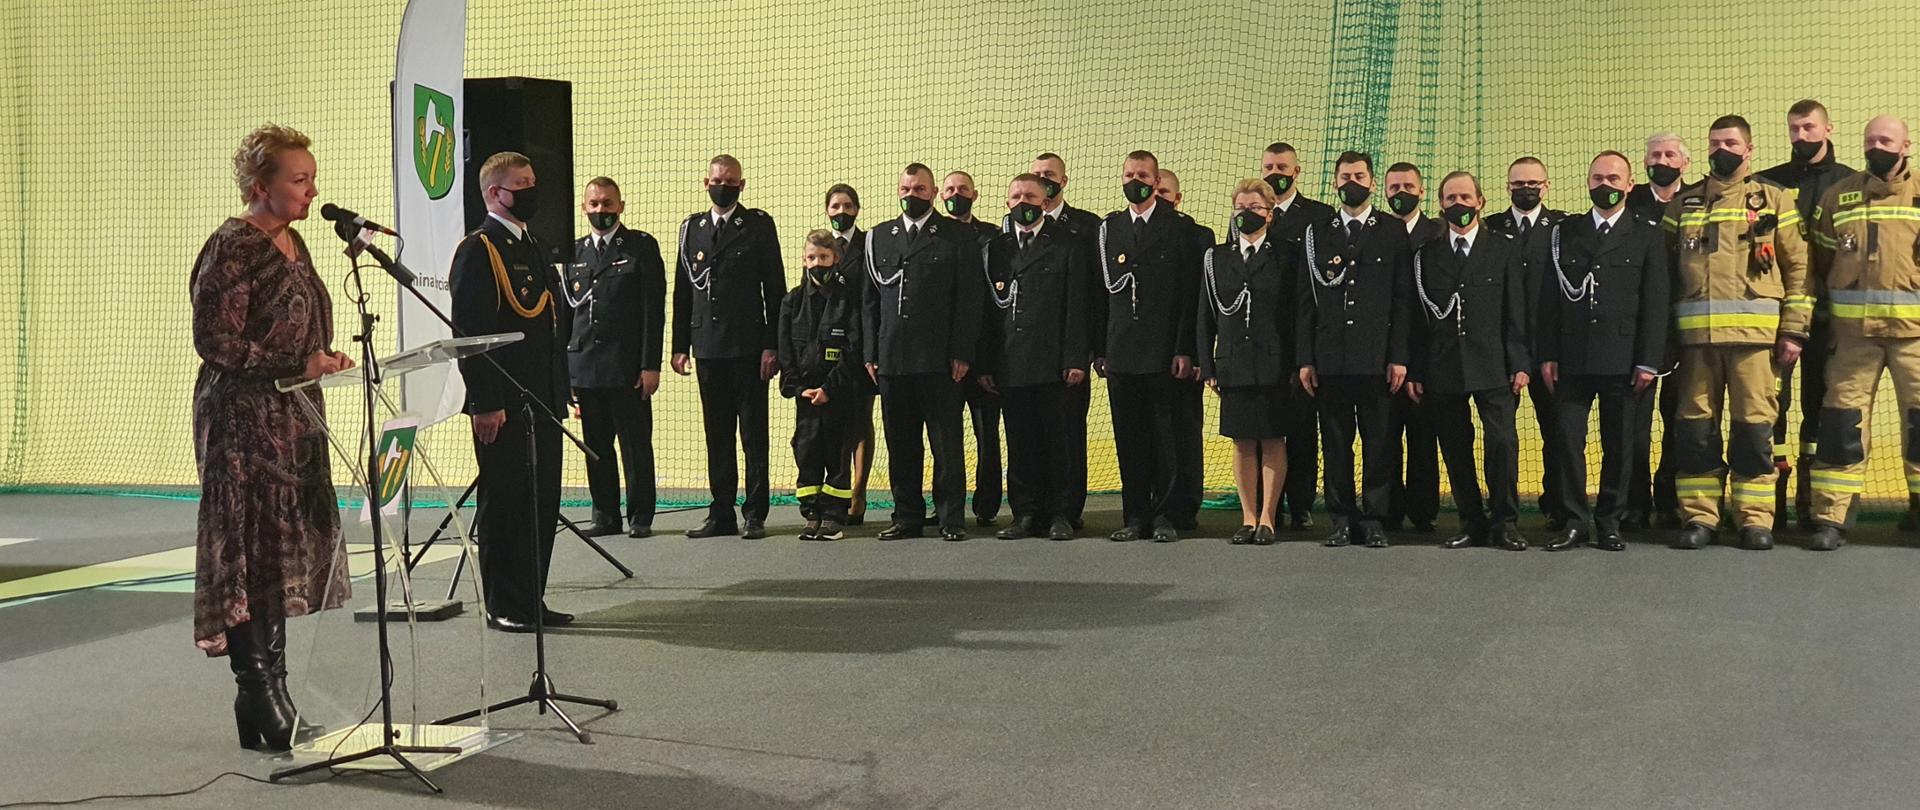 Zdjęcie przedstawia przemawiającą przed mikrofonem Wójt Gminy Barciany oraz druhów OSP ustawionych w dwuszeregu ubranych w czarny mundur wyjściowy lub piaskowe ubranie specjalne.